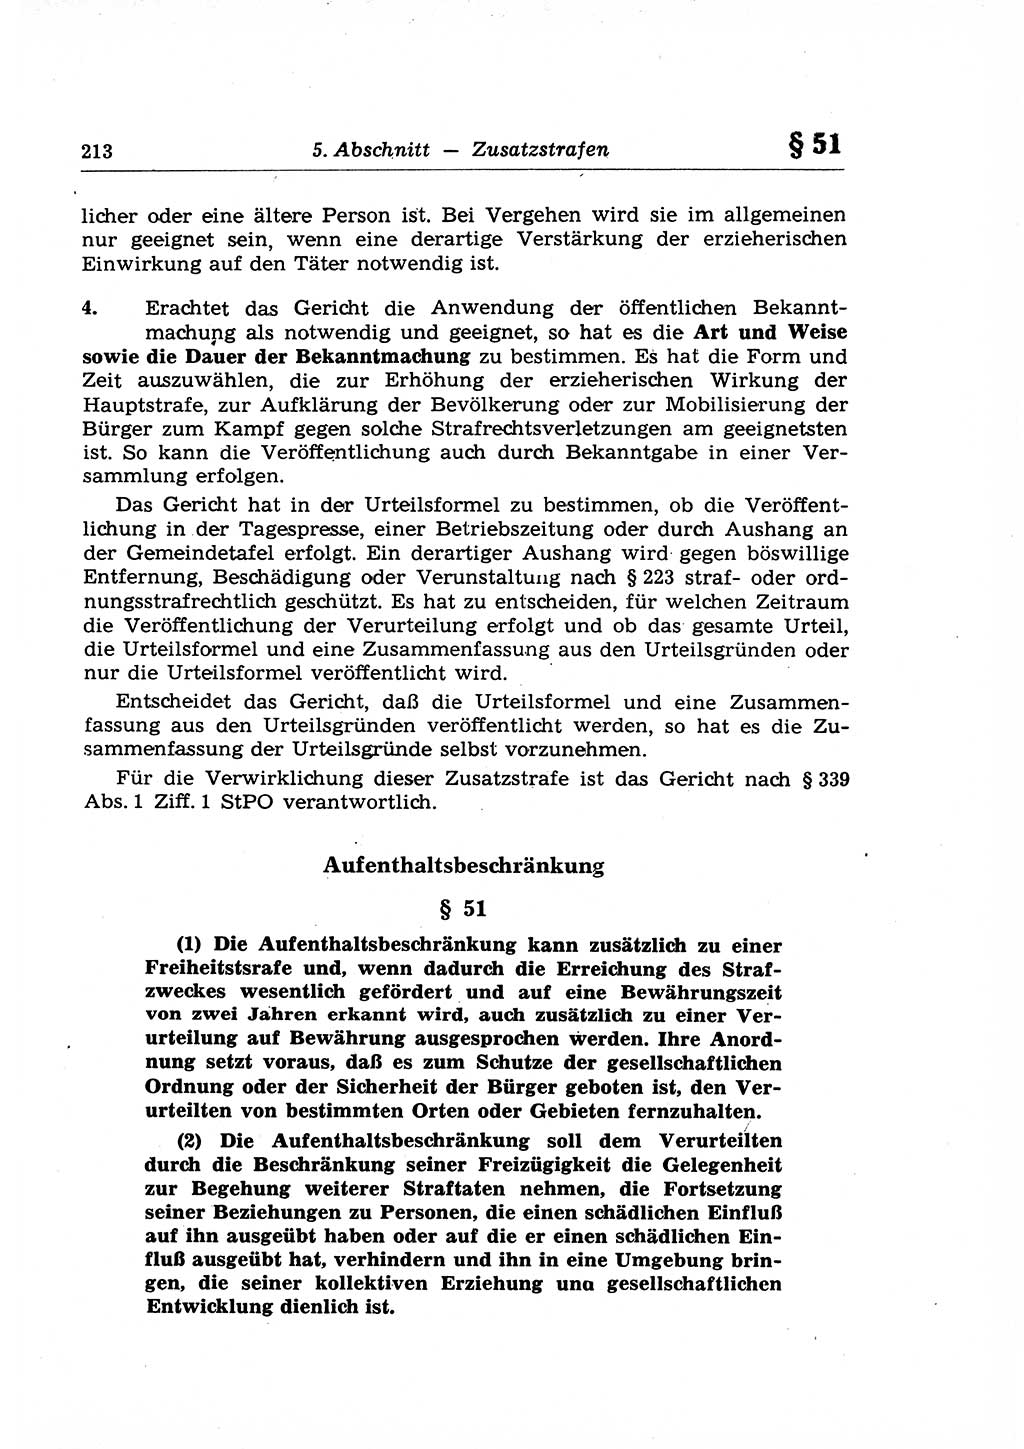 Strafrecht der Deutschen Demokratischen Republik (DDR), Lehrkommentar zum Strafgesetzbuch (StGB), Allgemeiner Teil 1969, Seite 213 (Strafr. DDR Lehrkomm. StGB AT 1969, S. 213)